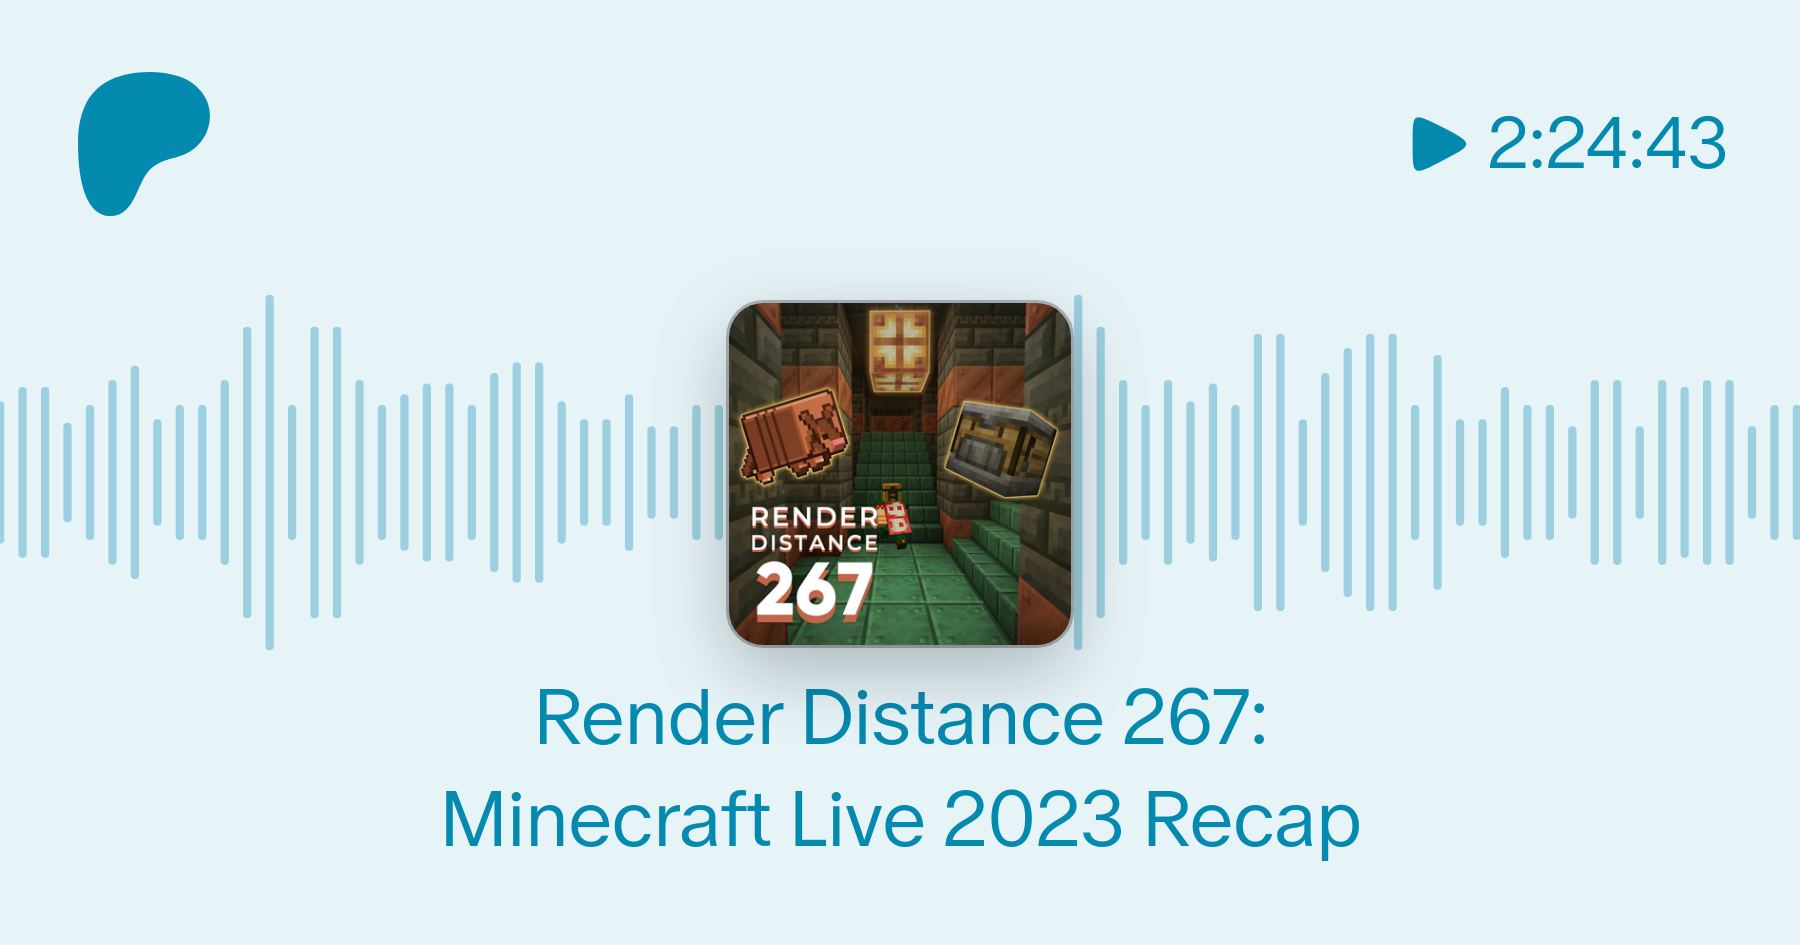 Minecraft Live 2023 The Recap